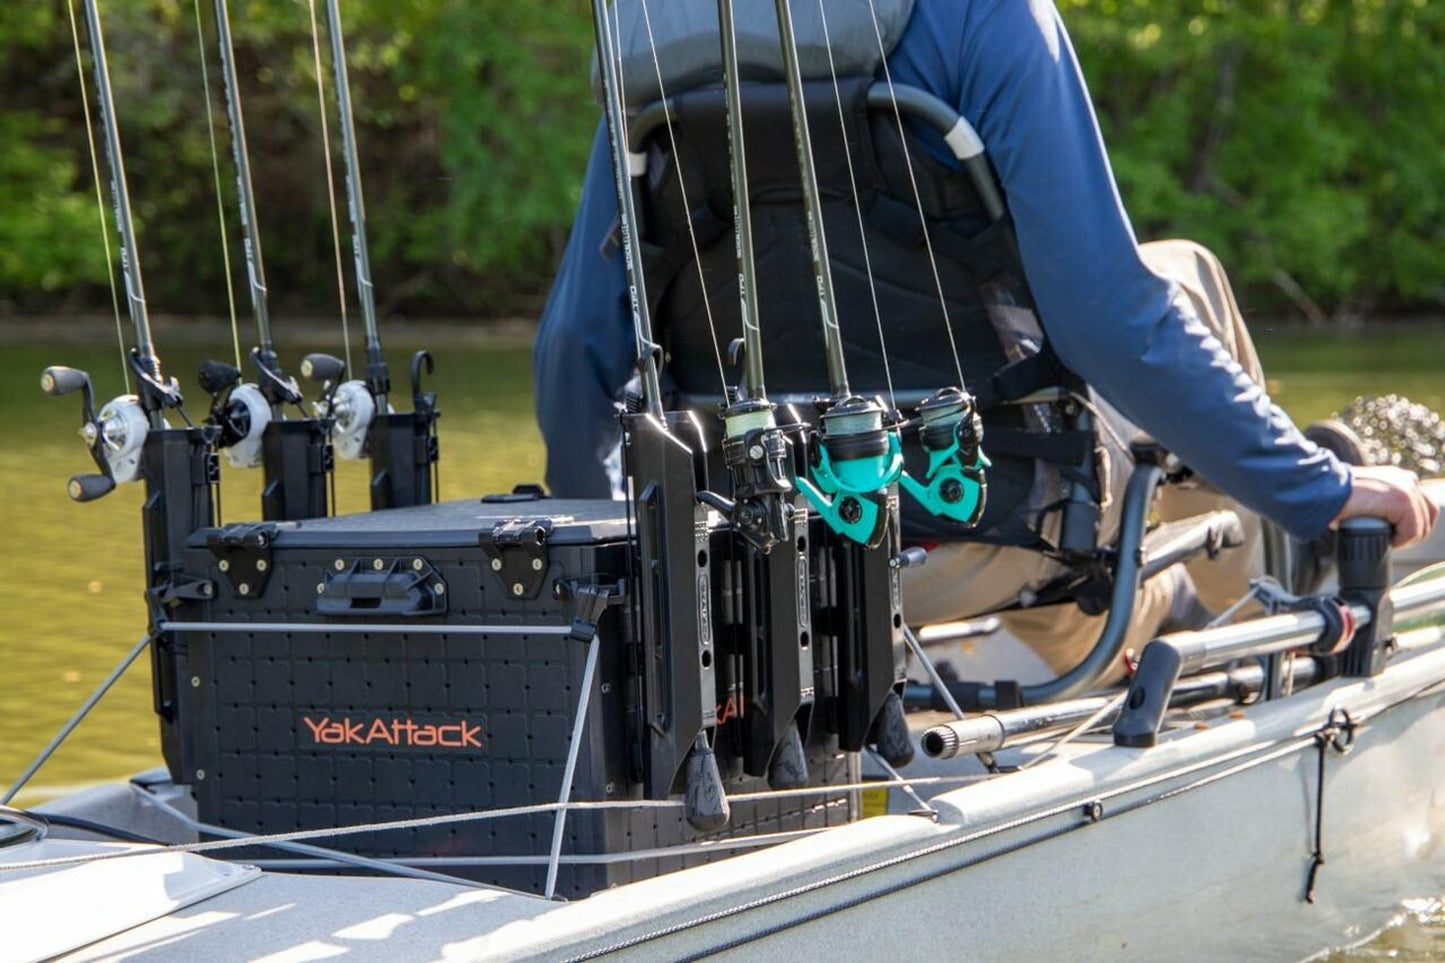 YakAttack BlackPak Pro Kayak Fishing Crate - 16" x 16"